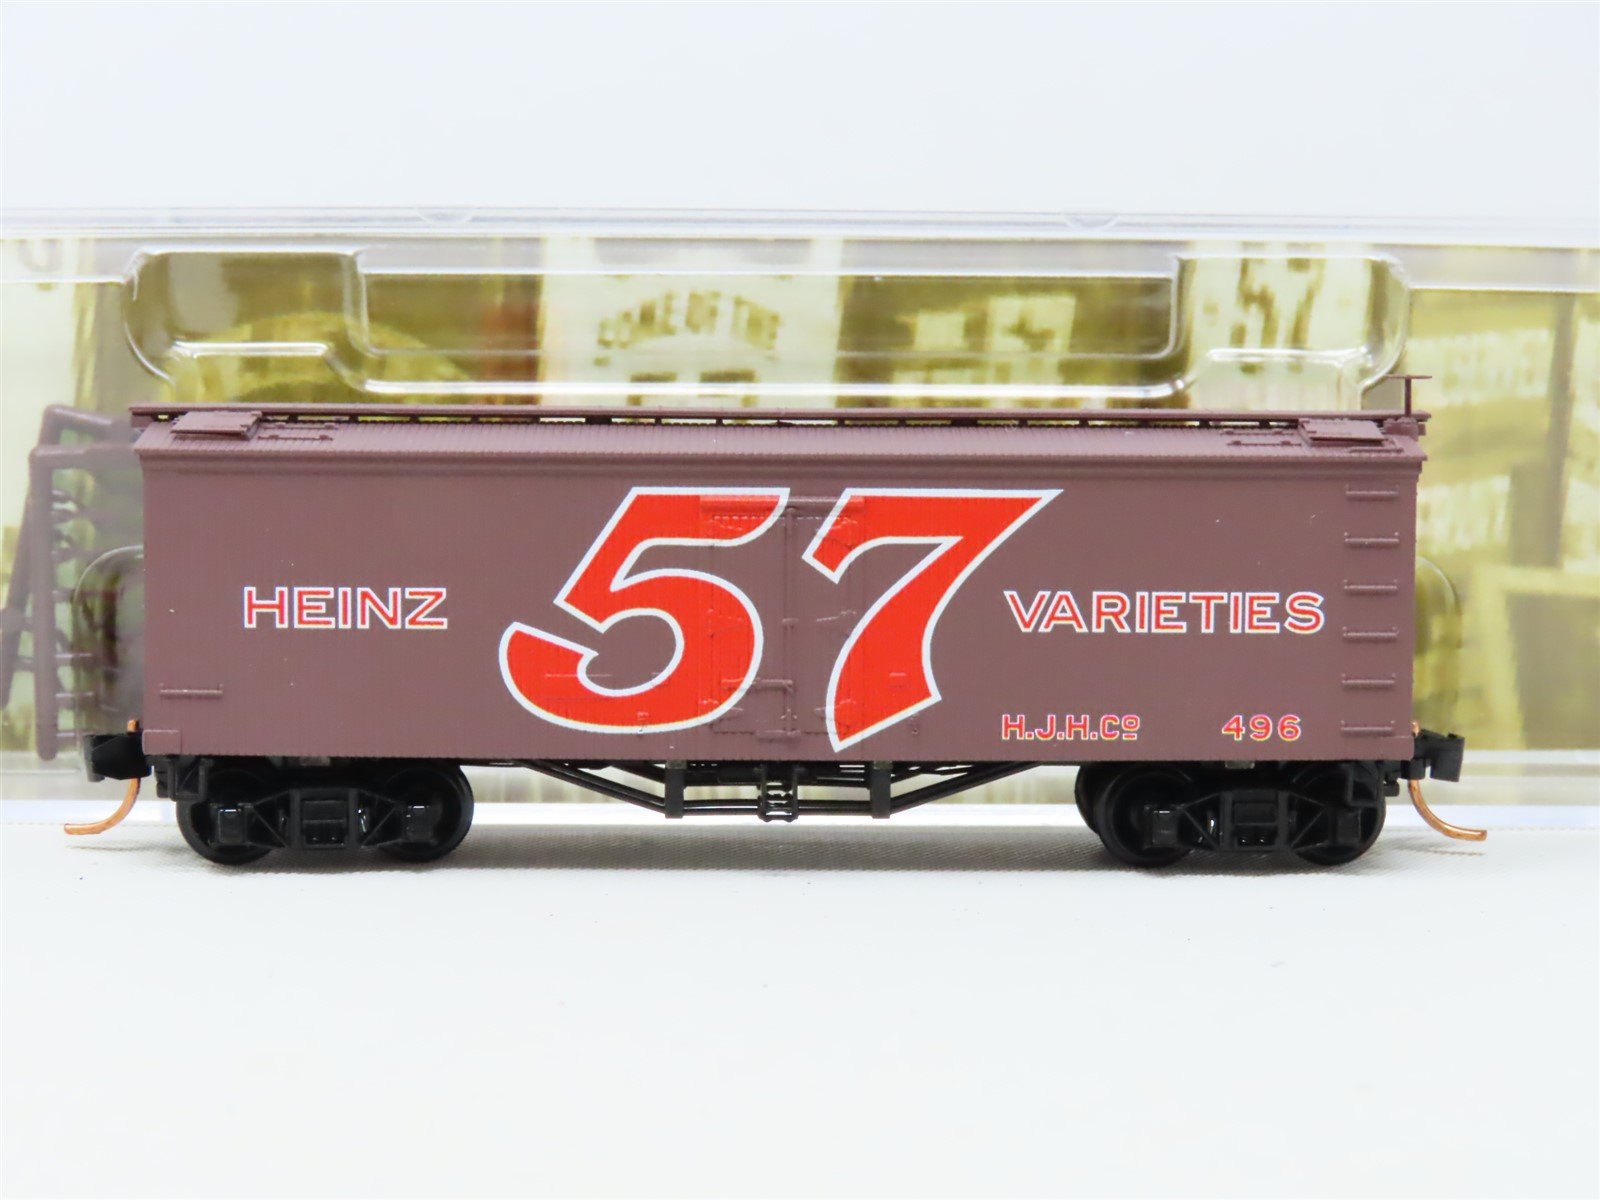 N Scale Micro-Trains MTL 05800290 HJHC Heinz 57 Varieties 36' Ice Reefer #496